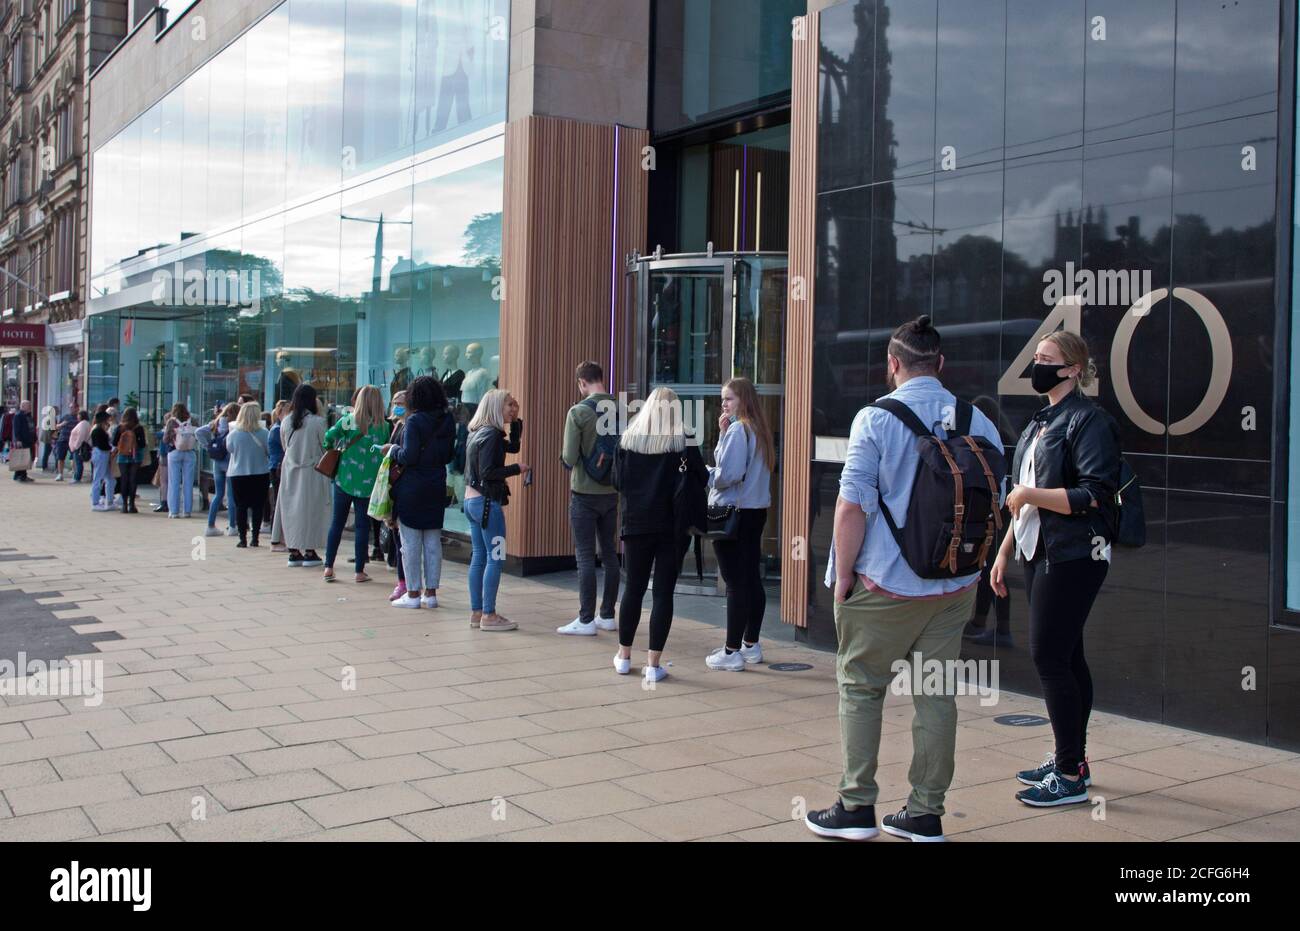 Édimbourg, Écosse, Royaume-Uni. 5 septembre 2020. Princes Street stocke de longues files d'attente socialement distancées devant les boutiques le samedi après-midi. Sur la photo, les jeunes font la queue devant H&M. Crédit : Arch White/Alamy Live News. Banque D'Images